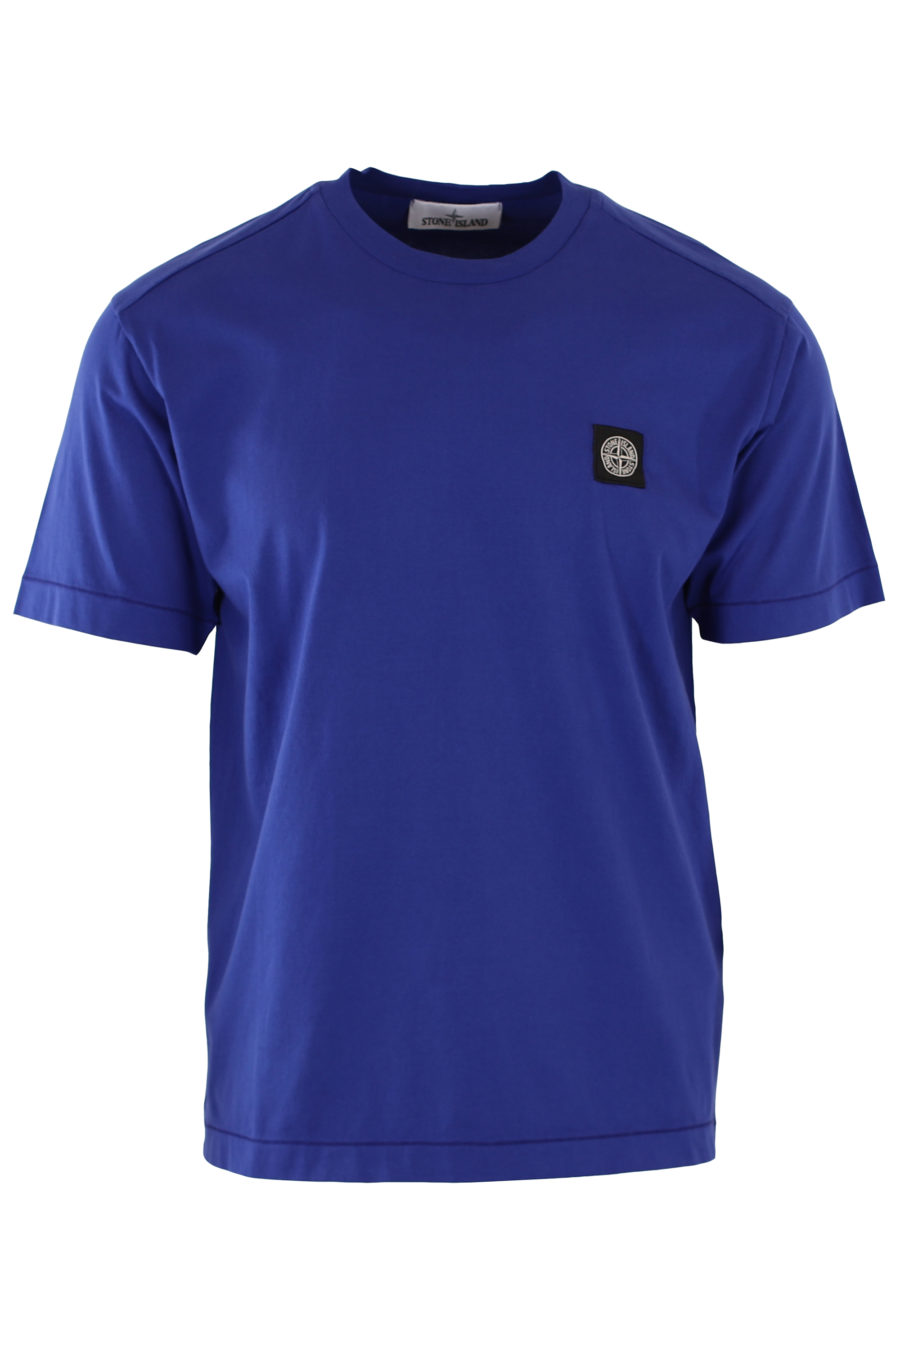 Camiseta de color azul eléctrico con parche - IMG 1415